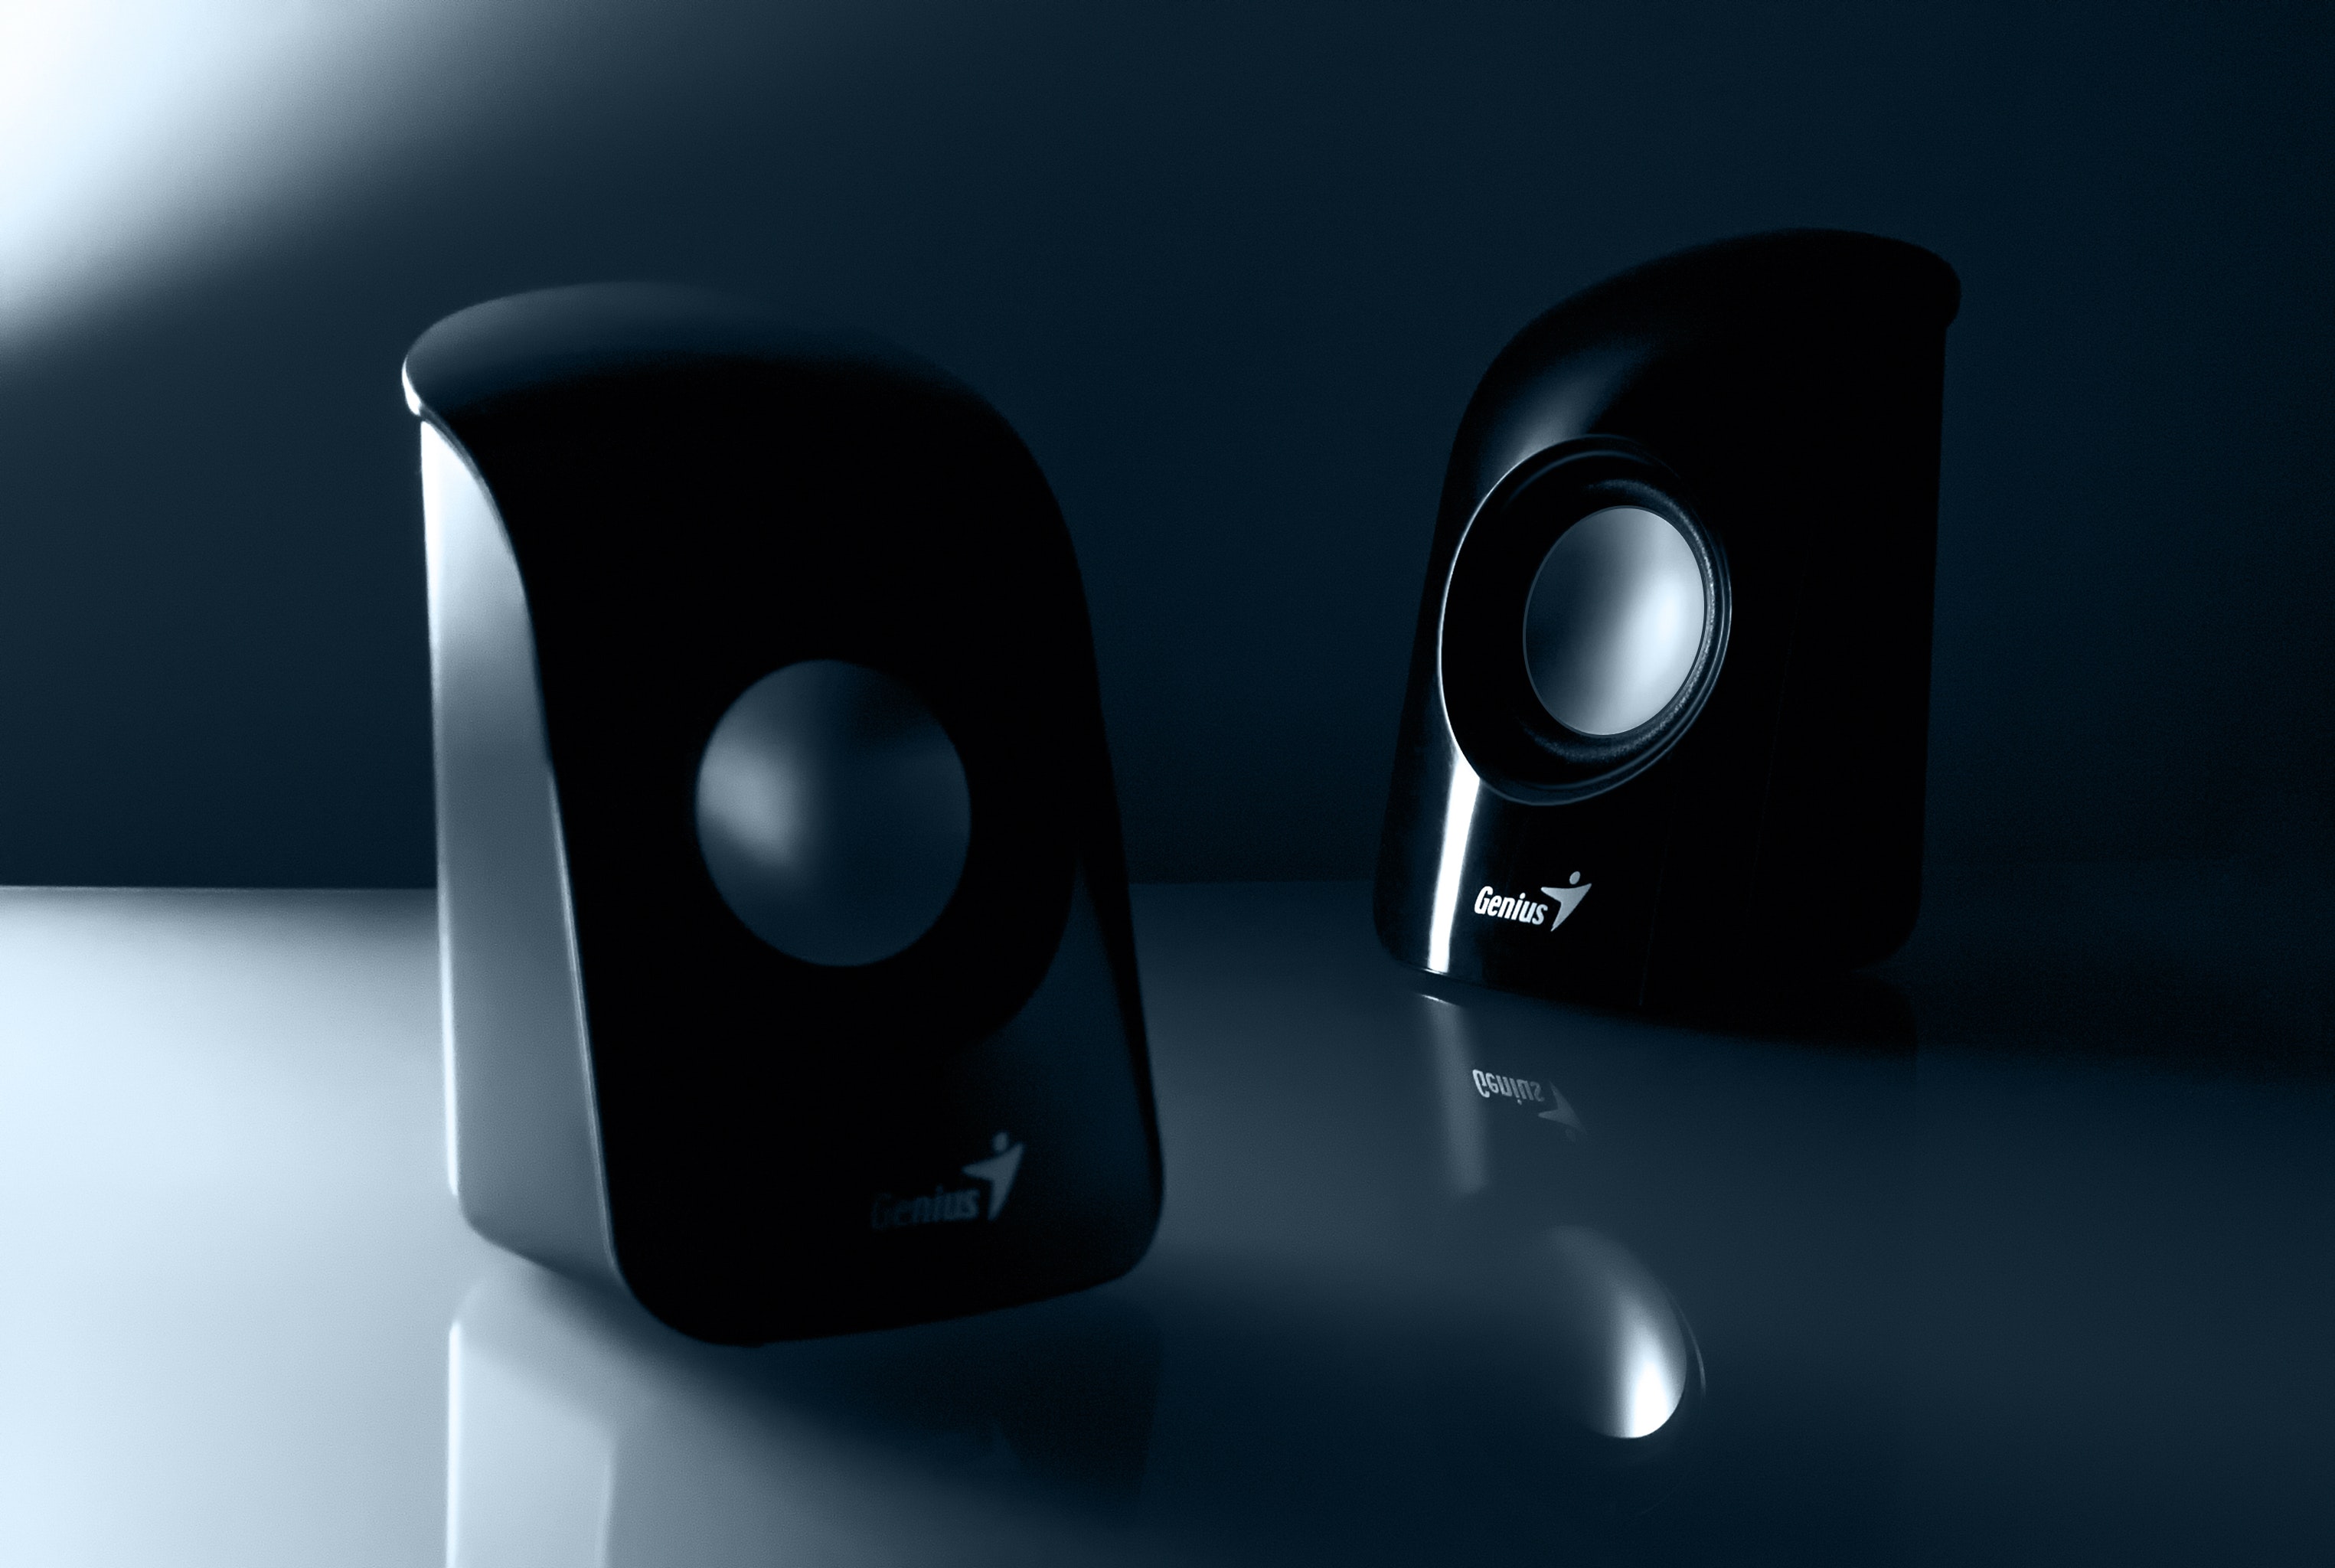 Genius Black Multimedia Speaker, Accessories, Audio, Black, Color, HQ Photo